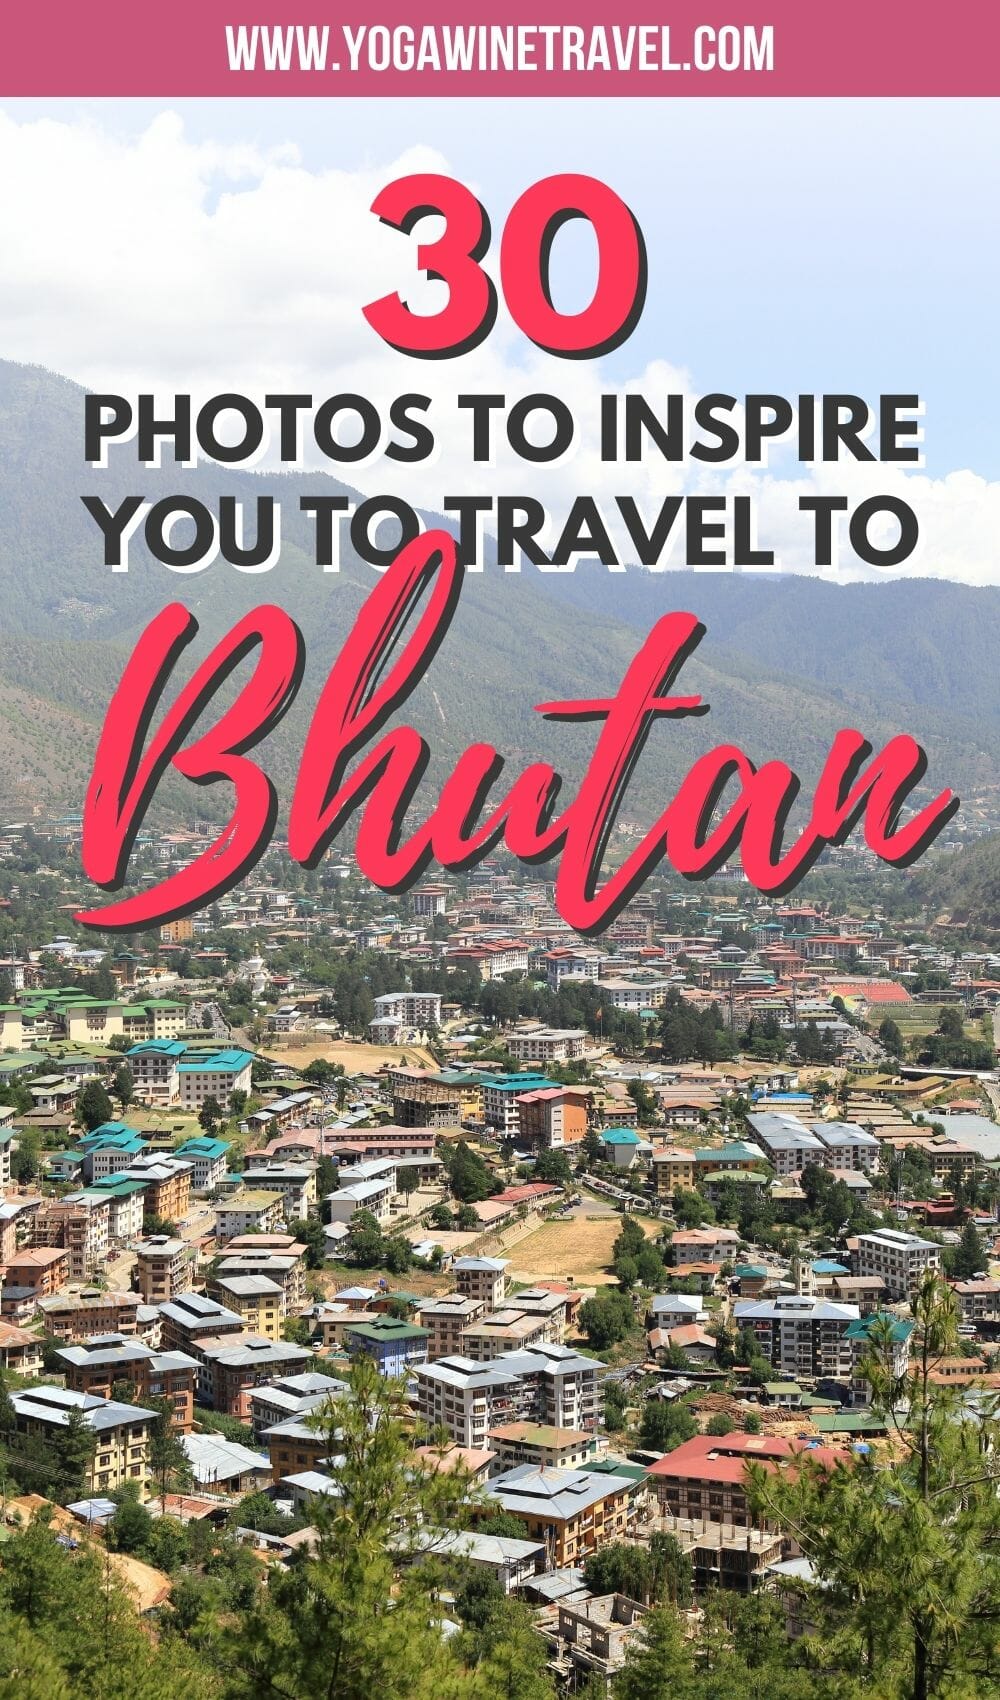 Bhutan city with text overlay